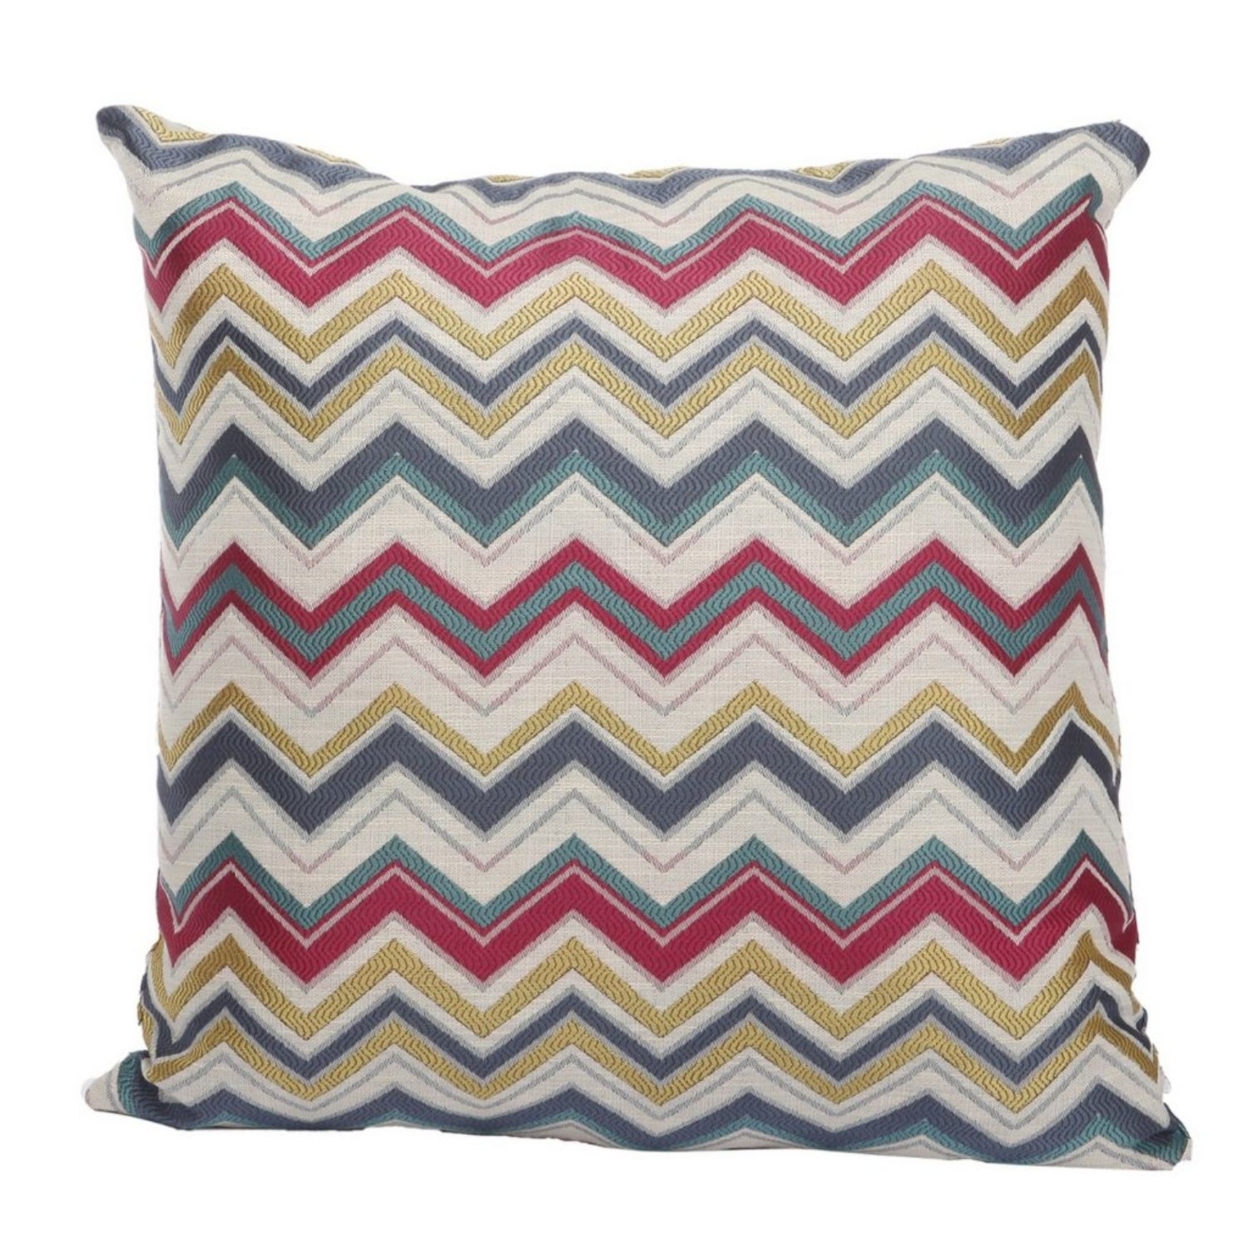 Woven Design Fabric Accent Pillow In Zigzag Pattern, Multicolor- Saltoro Sherpi